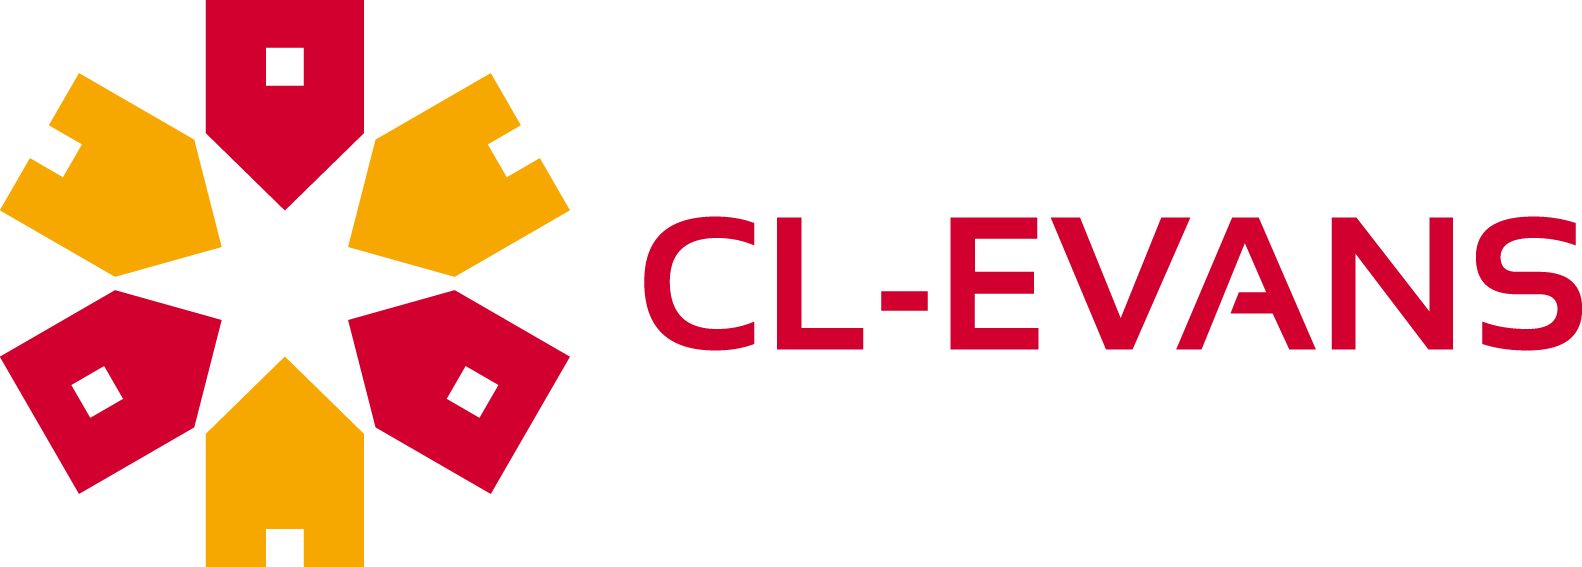 CL-EVANS logo